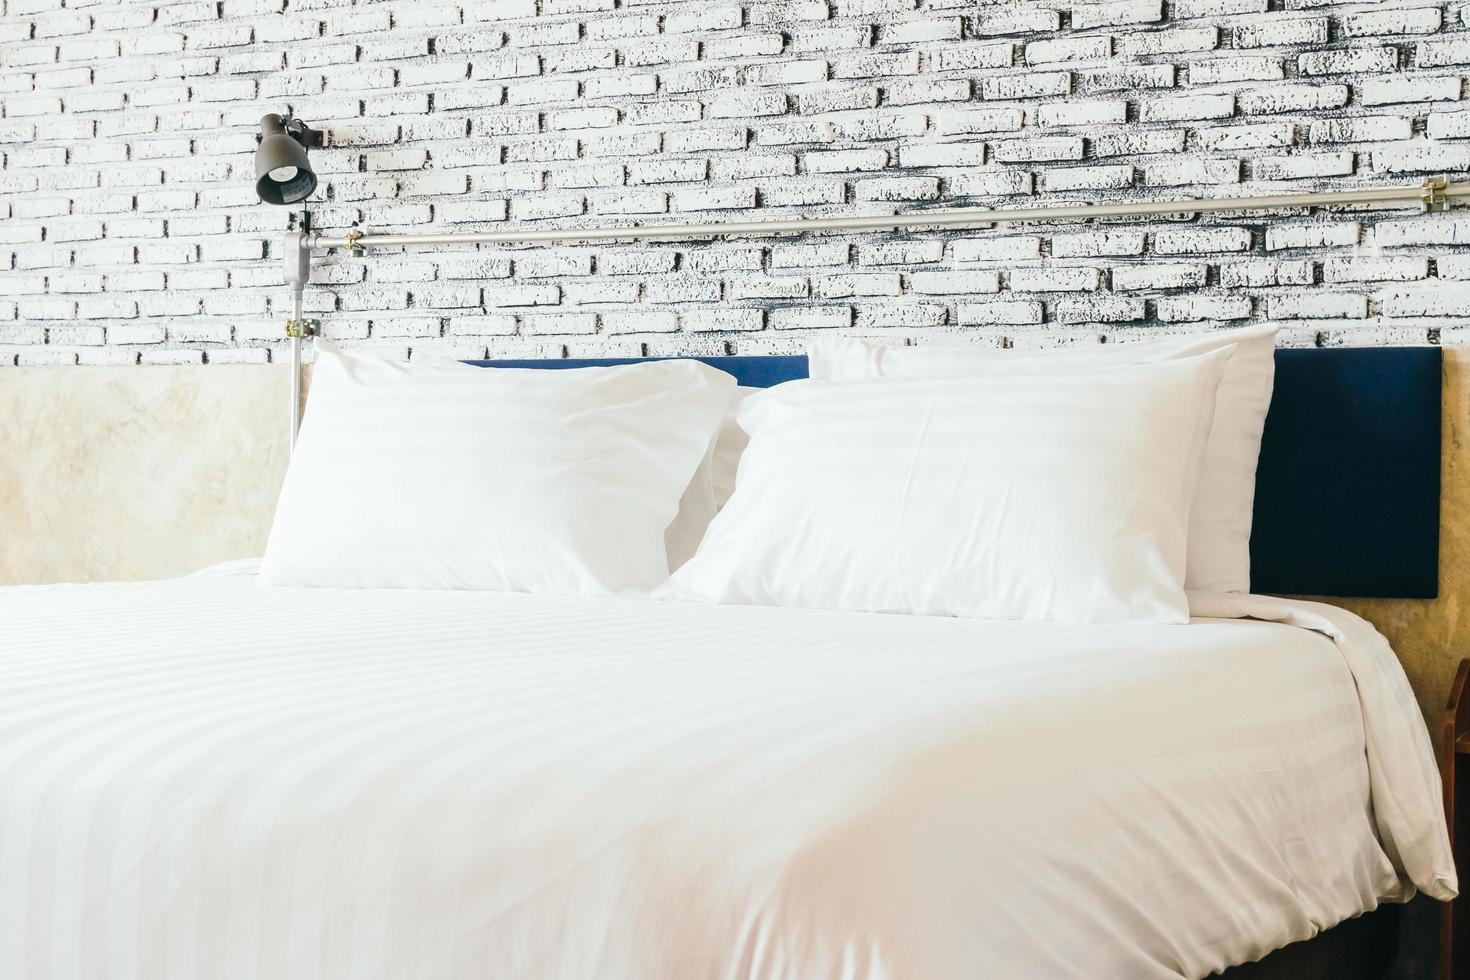 cuscino bianco sul letto foto